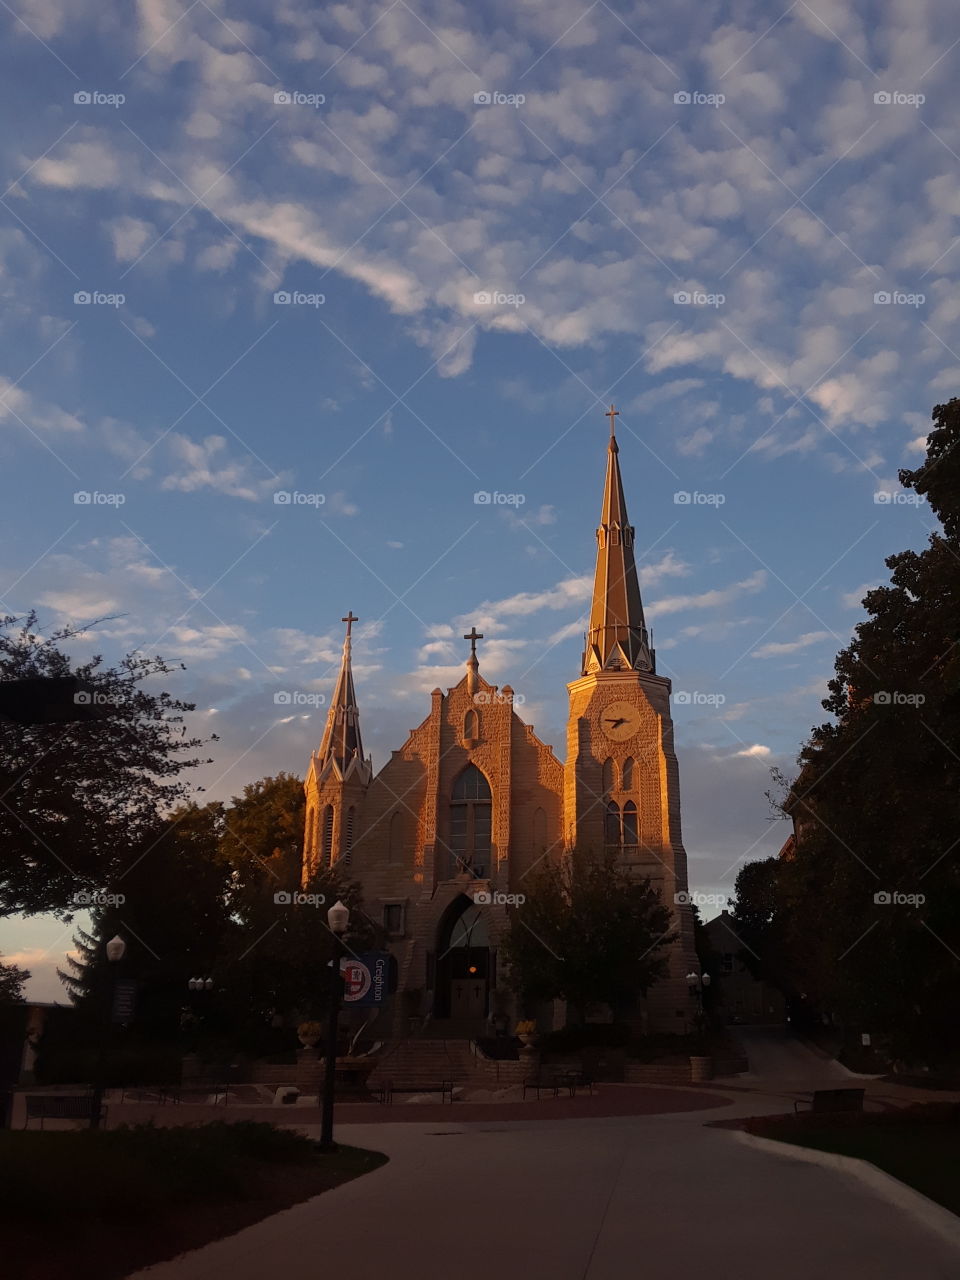 The beautiful St. John's Church on the Creighton University Campus in Omaha Nevraska at sundown